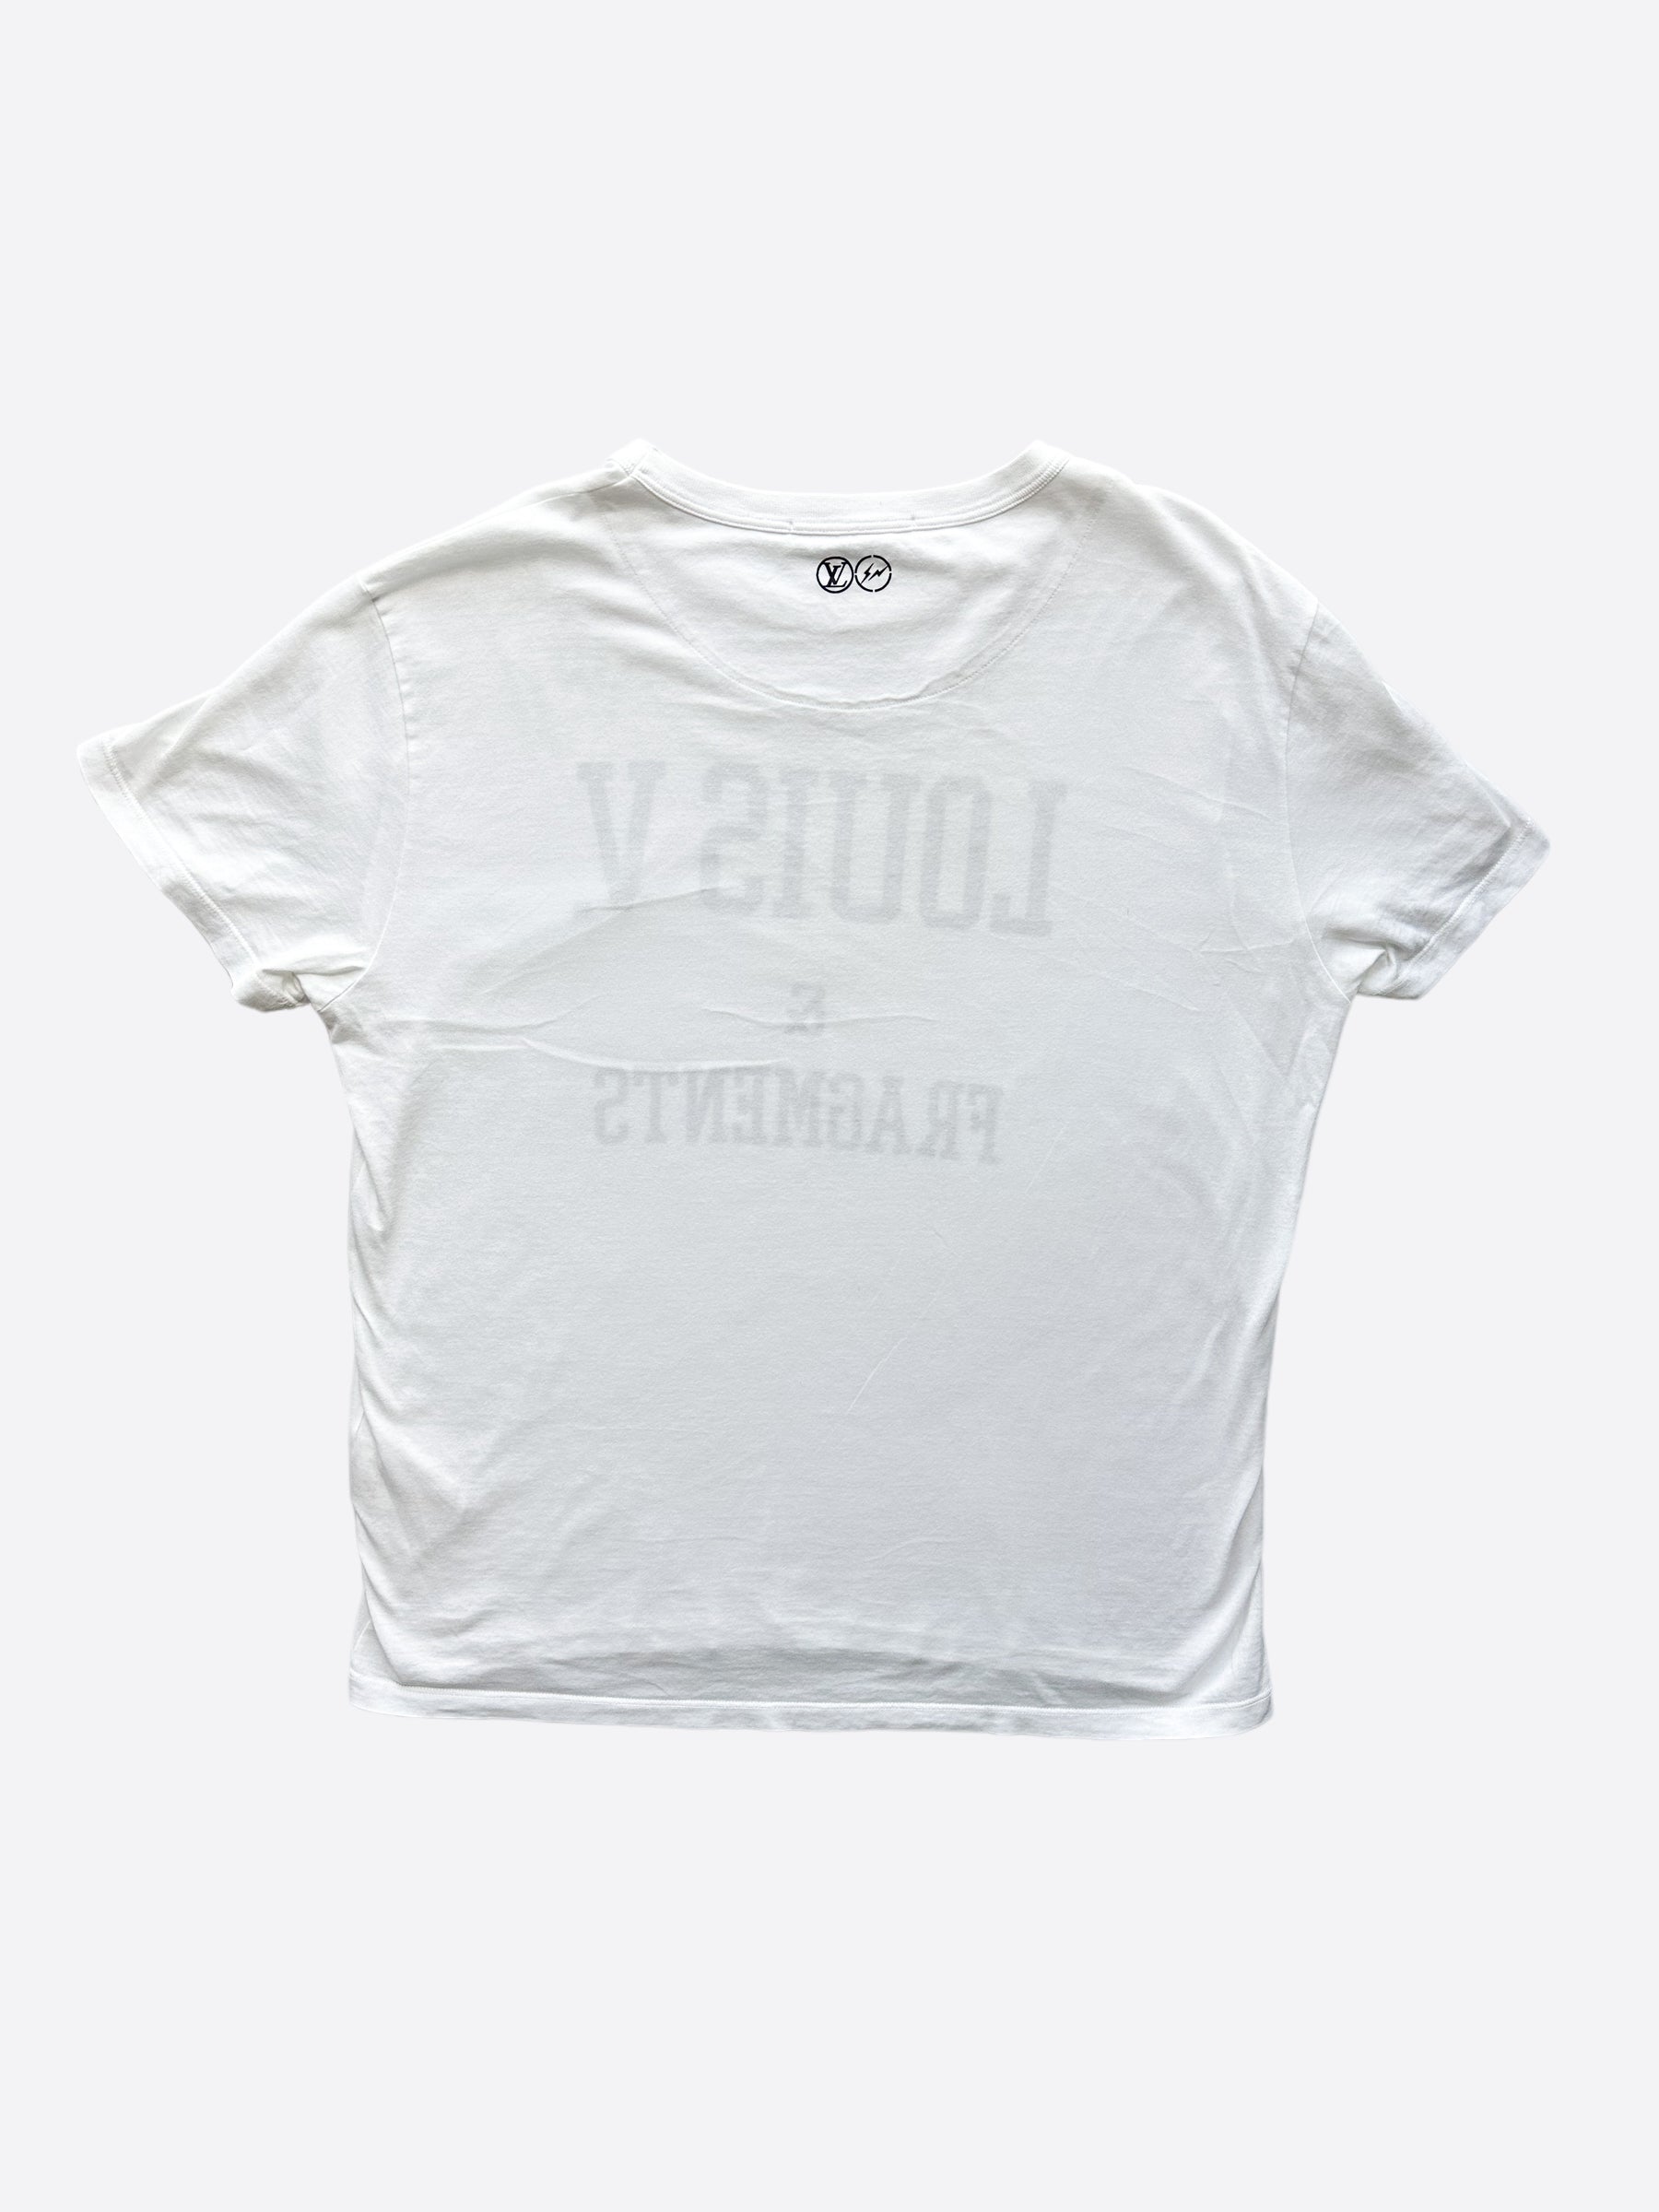 Louis Vuitton x Fragments White T-Shirt - L – Rokit